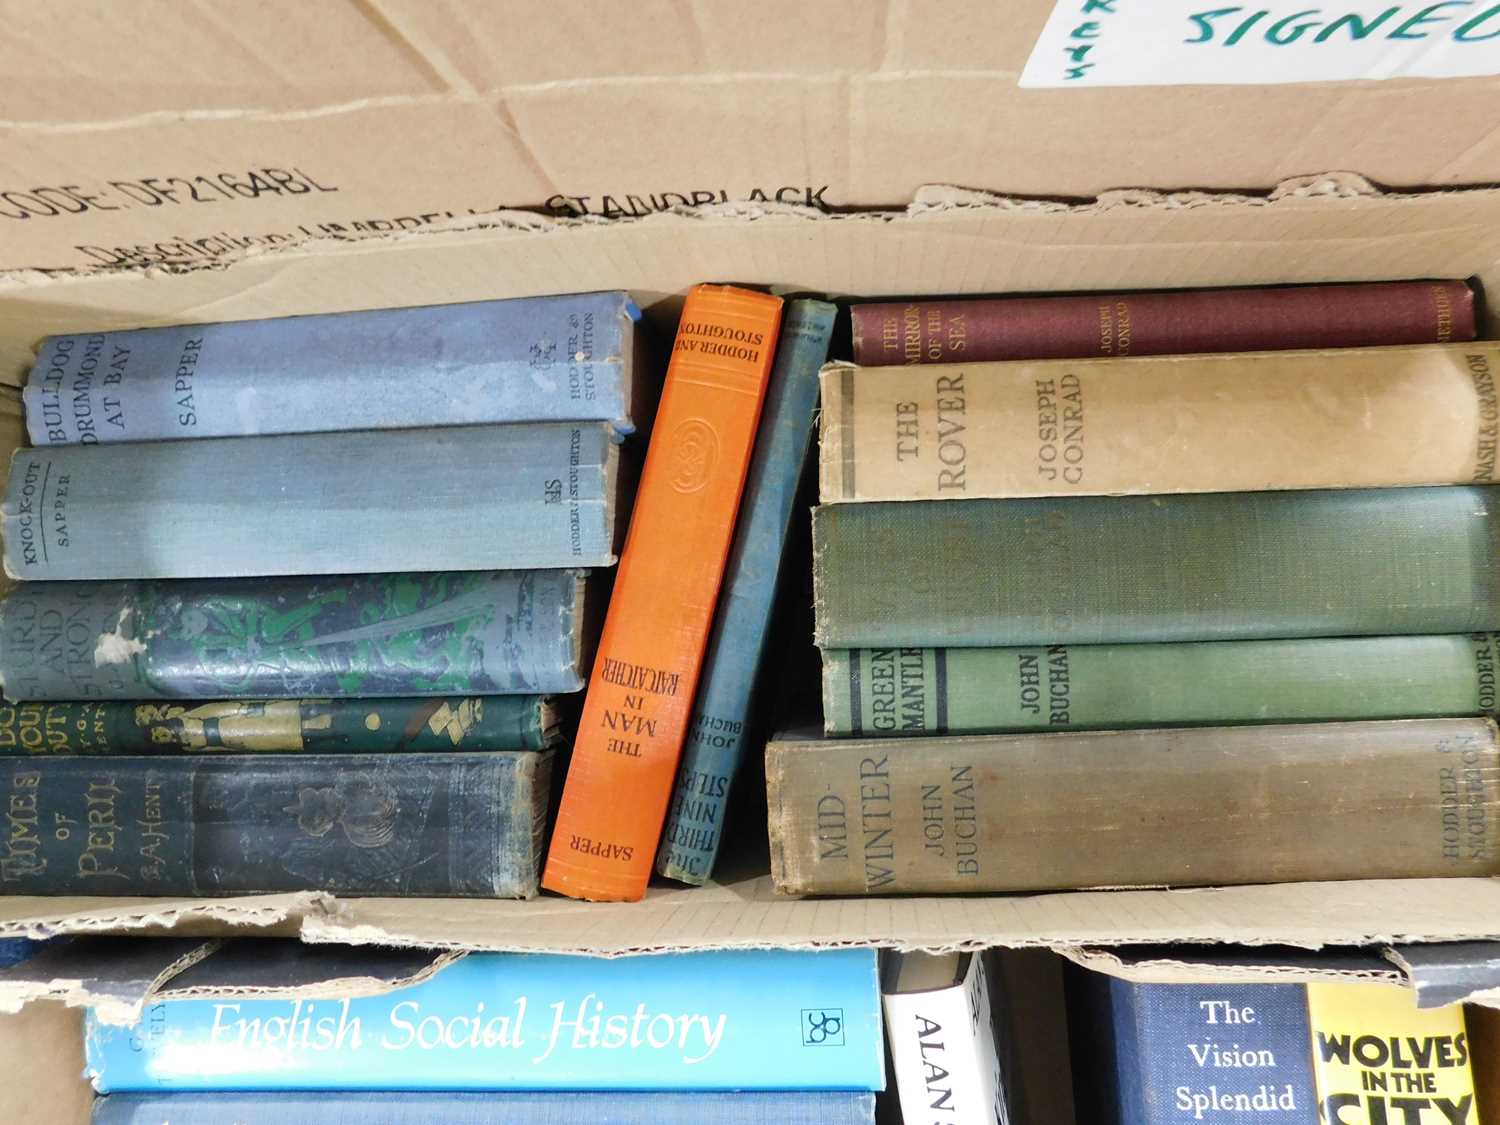 Small box: Literature